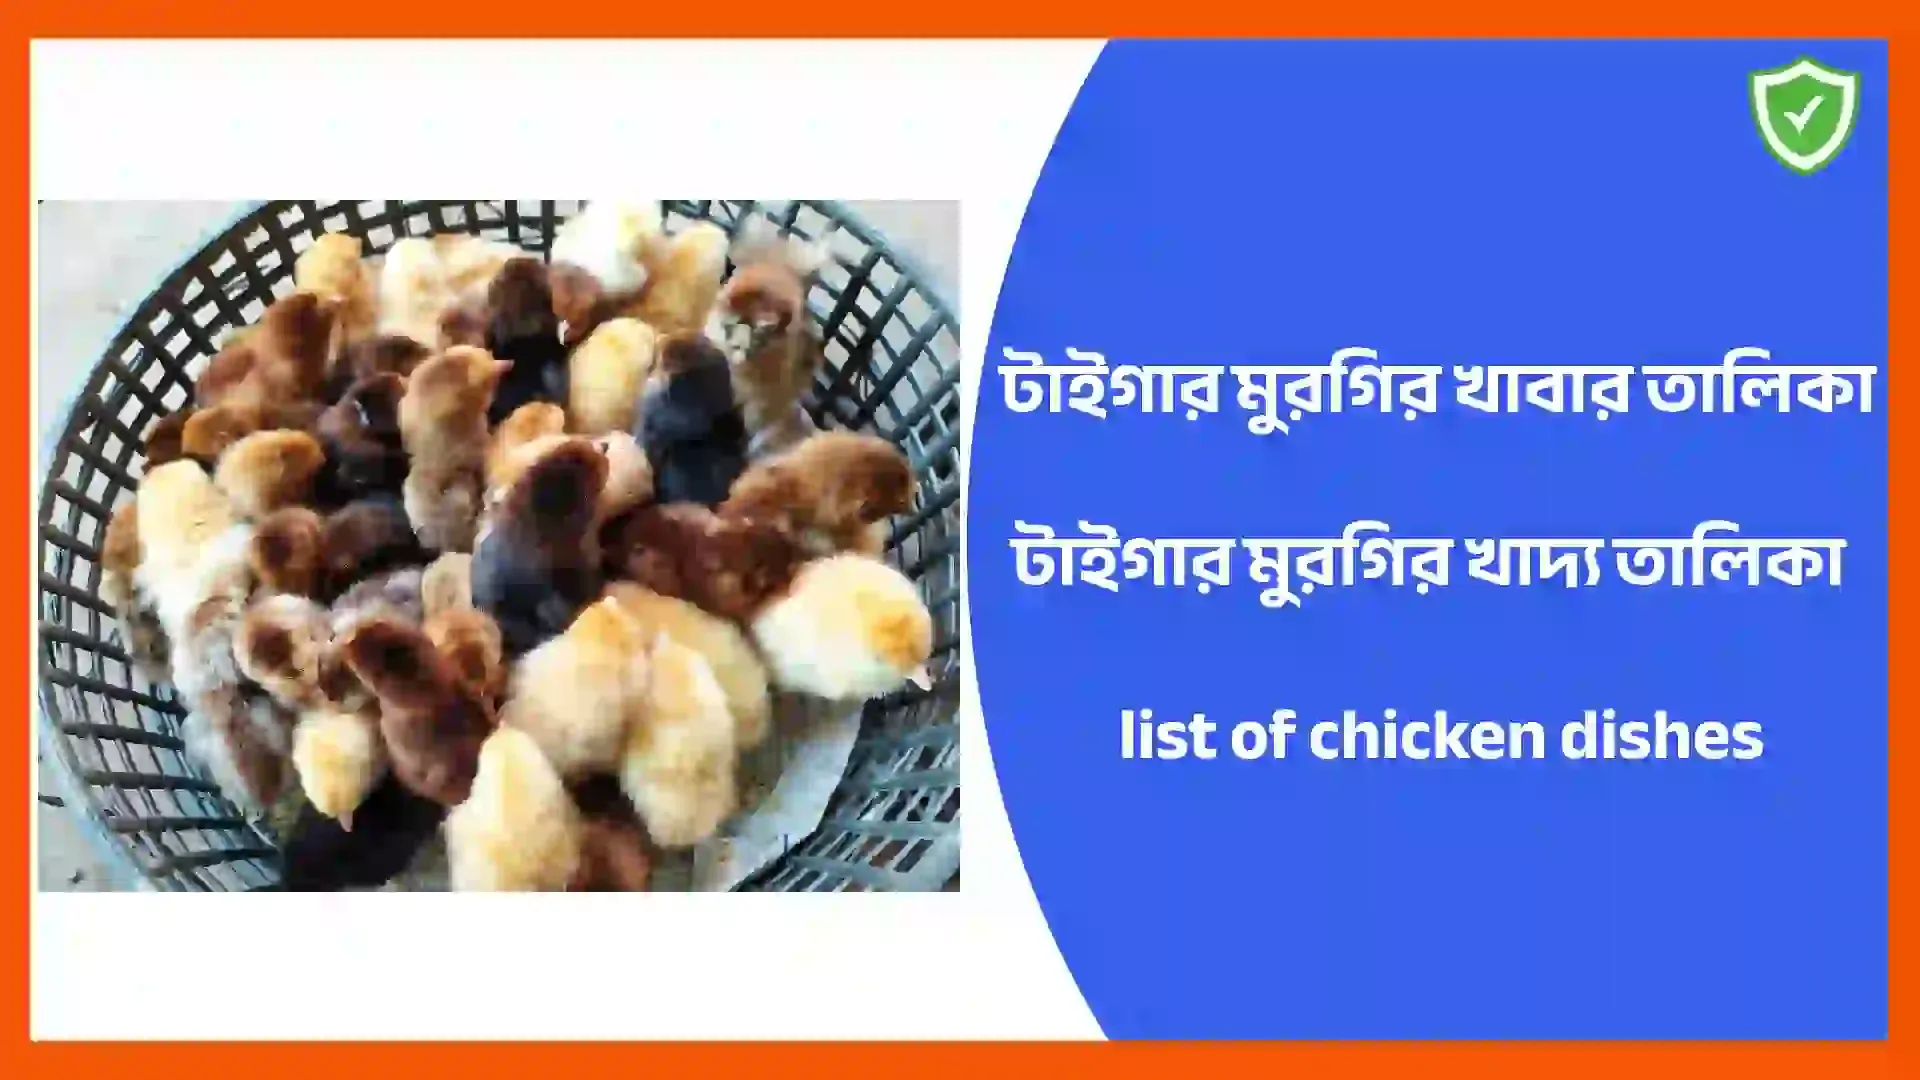 টাইগার মুরগির খাবার তালিকা | টাইগার মুরগির খাদ্য তালিকা | list of chicken dishes